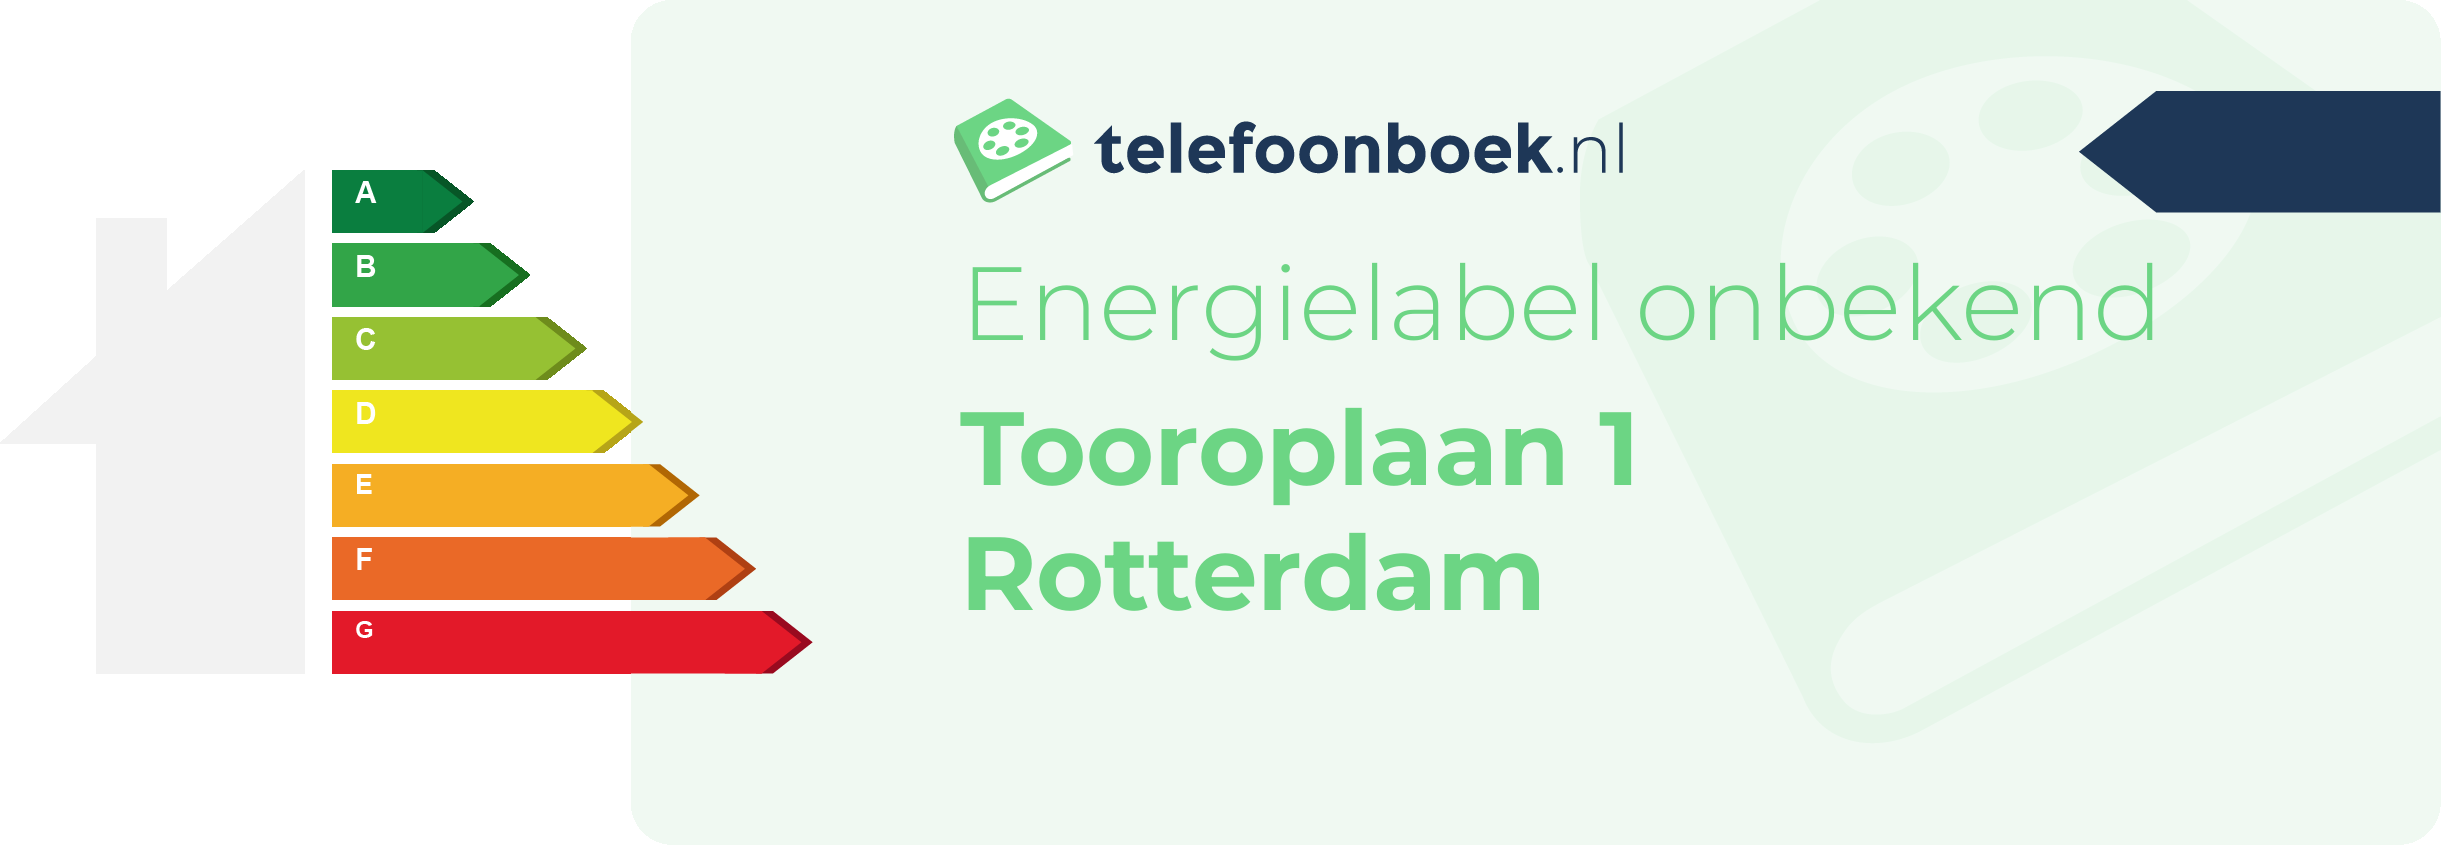 Energielabel Tooroplaan 1 Rotterdam